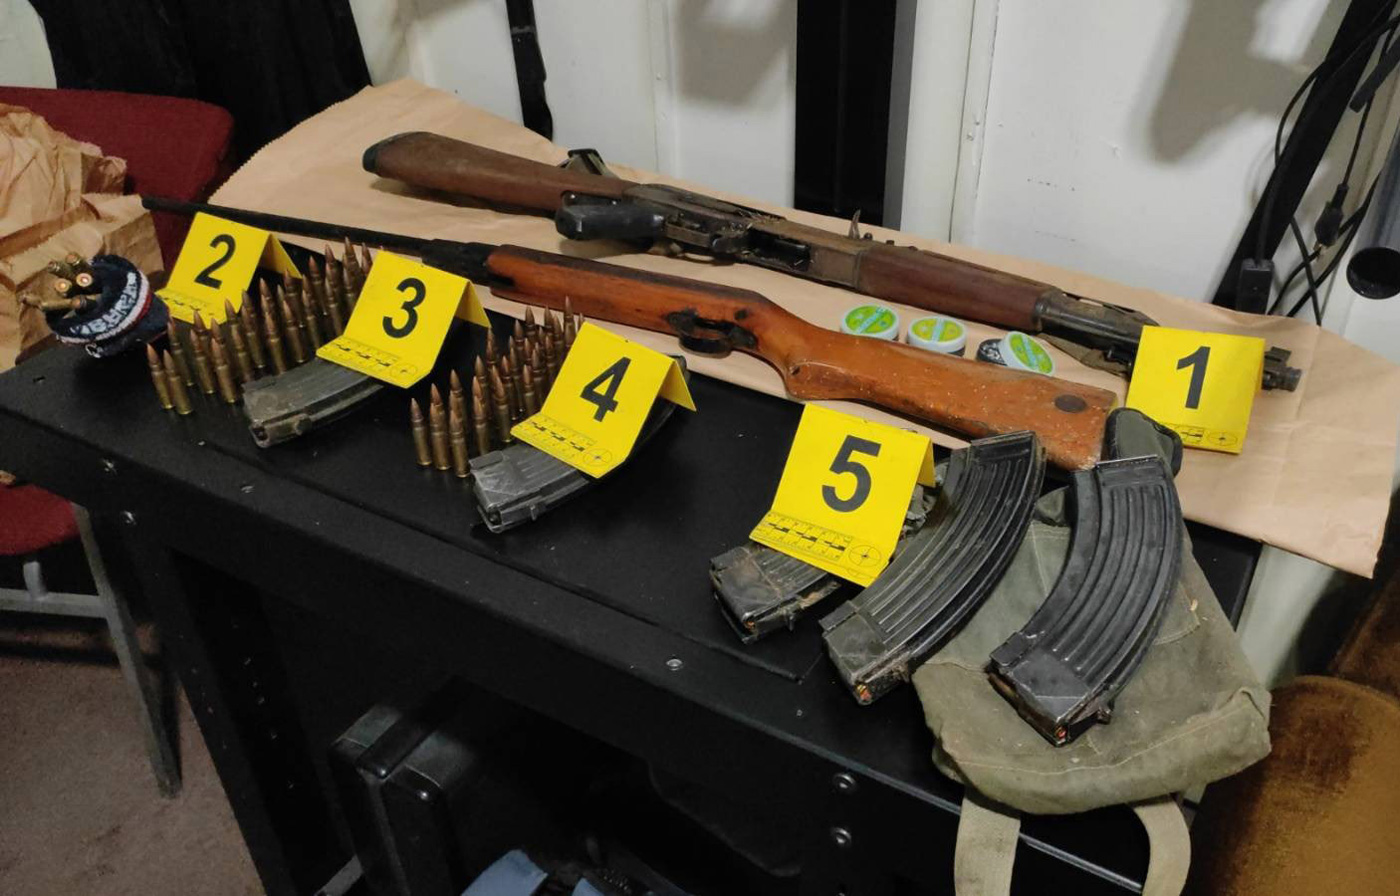 Oduzeto različito oružje i municija nađeno prilikom pretresa objekata i dvorišta osumnjičenog